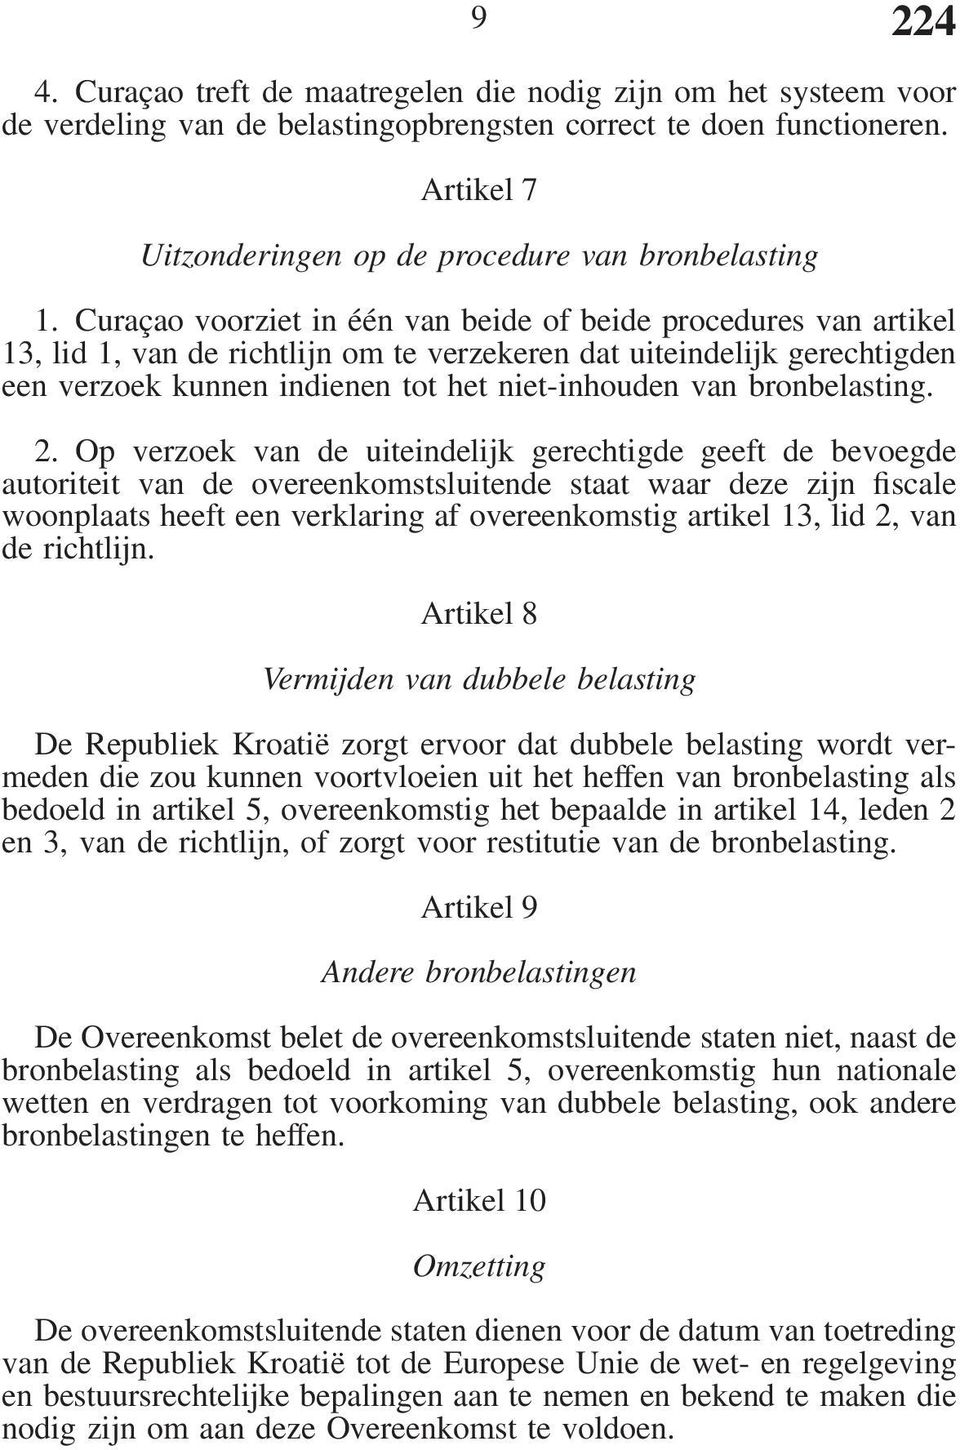 Curaçao voorziet in één van beide of beide procedures van artikel 13, lid 1, van de richtlijn om te verzekeren dat uiteindelijk gerechtigden een verzoek kunnen indienen tot het niet-inhouden van